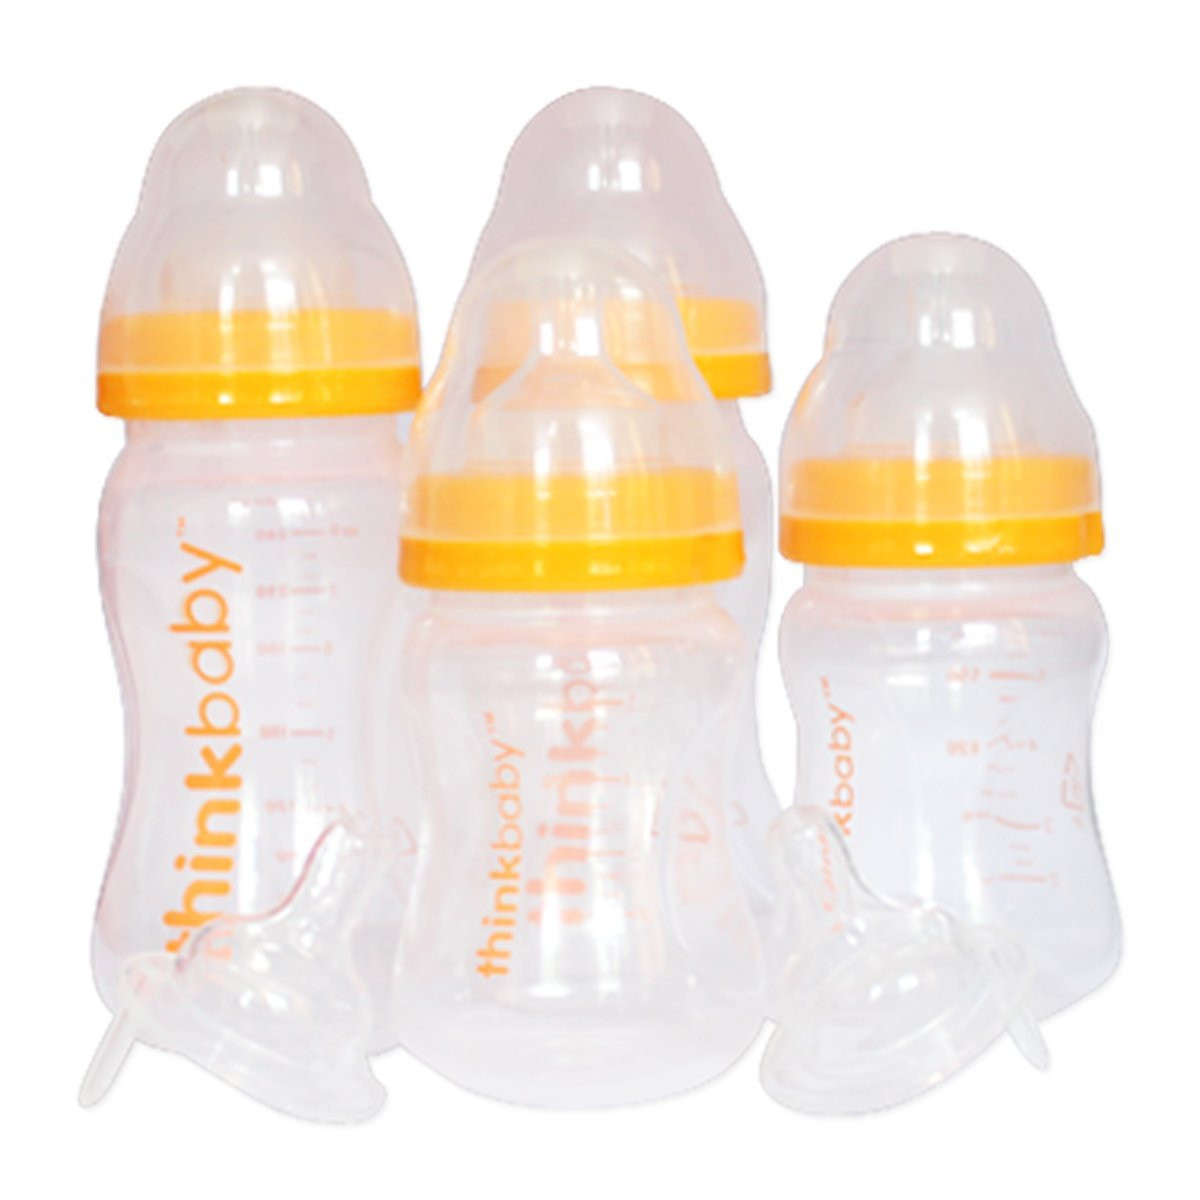 thinkbaby Starter Set, BPA Free - Parents' Favorite